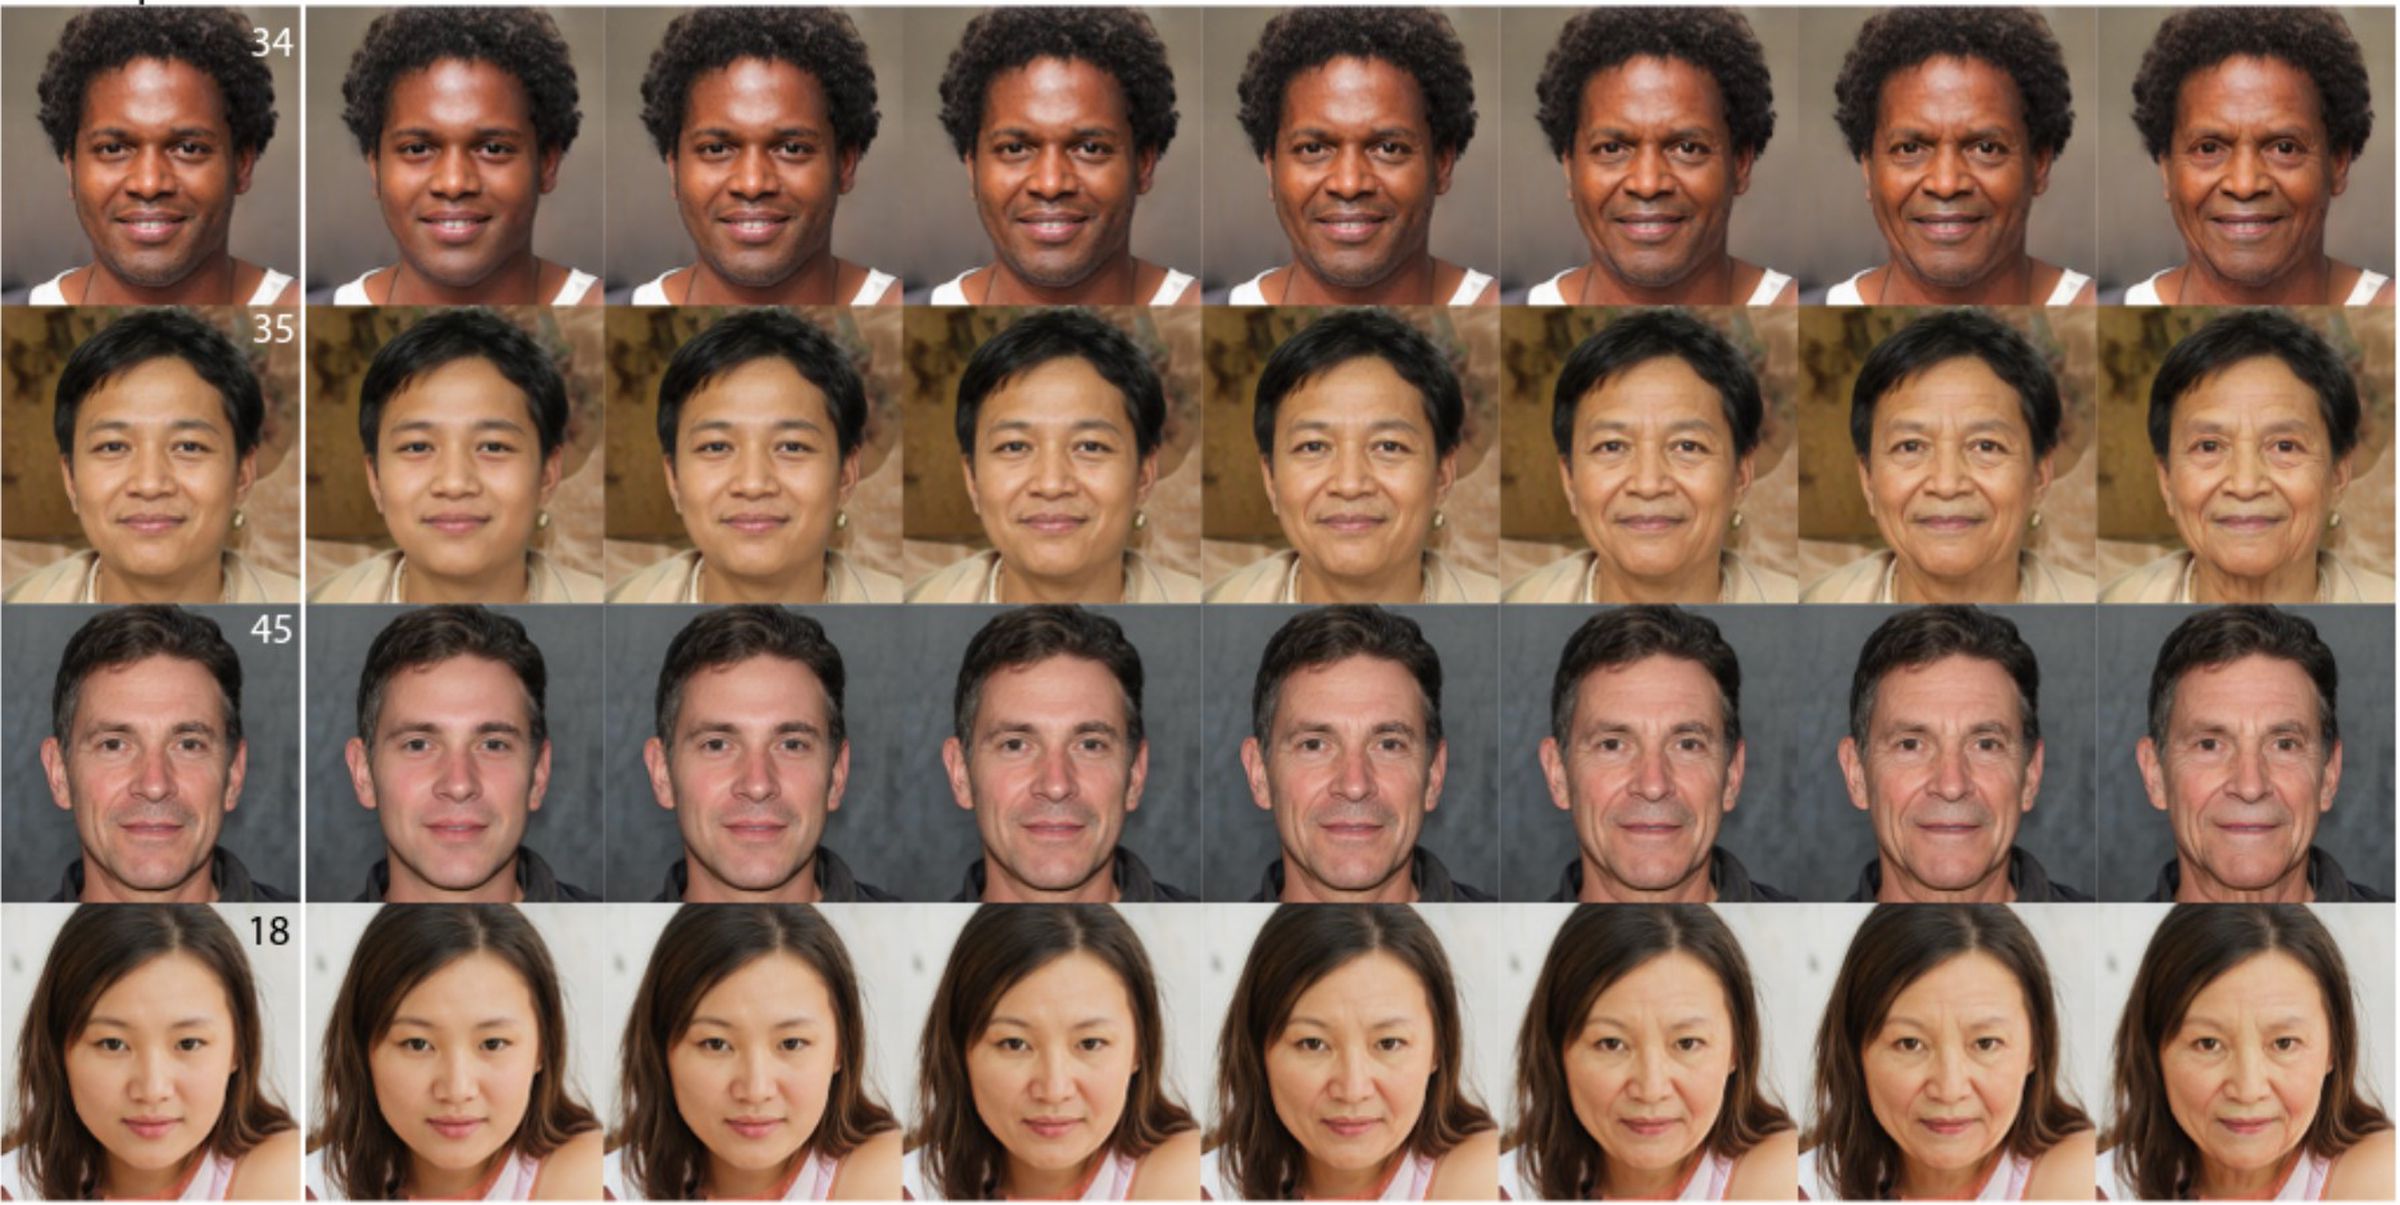 Çeşitli yaşlardan dijital olarak oluşturulmuş insan yüzlerinin sıra sıra görüntüleri